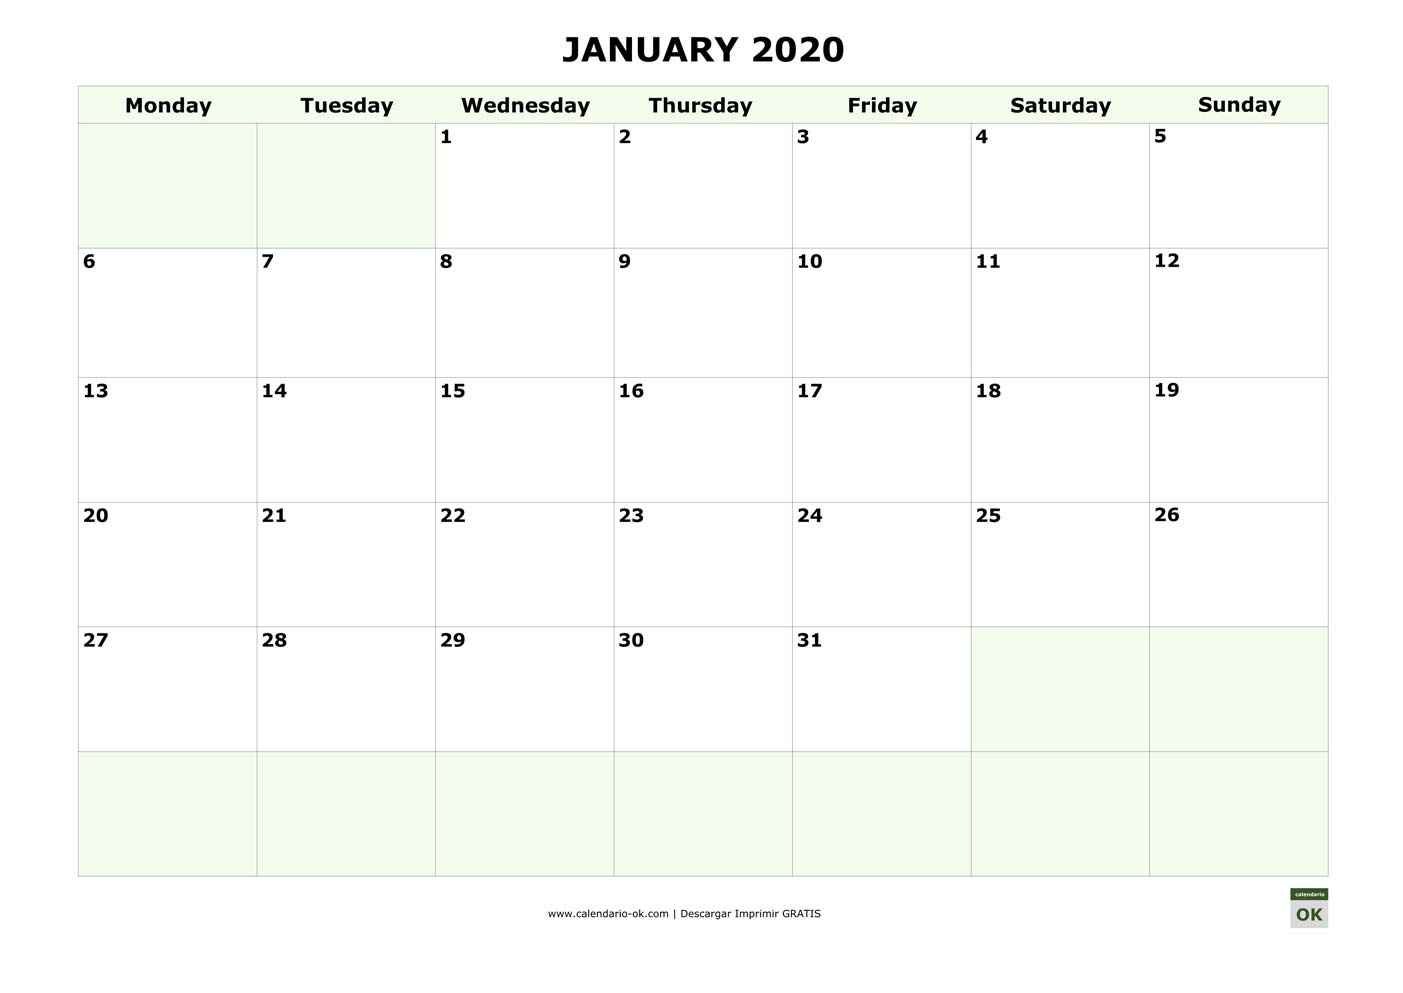 ENERO 2020 calendario en INGLES